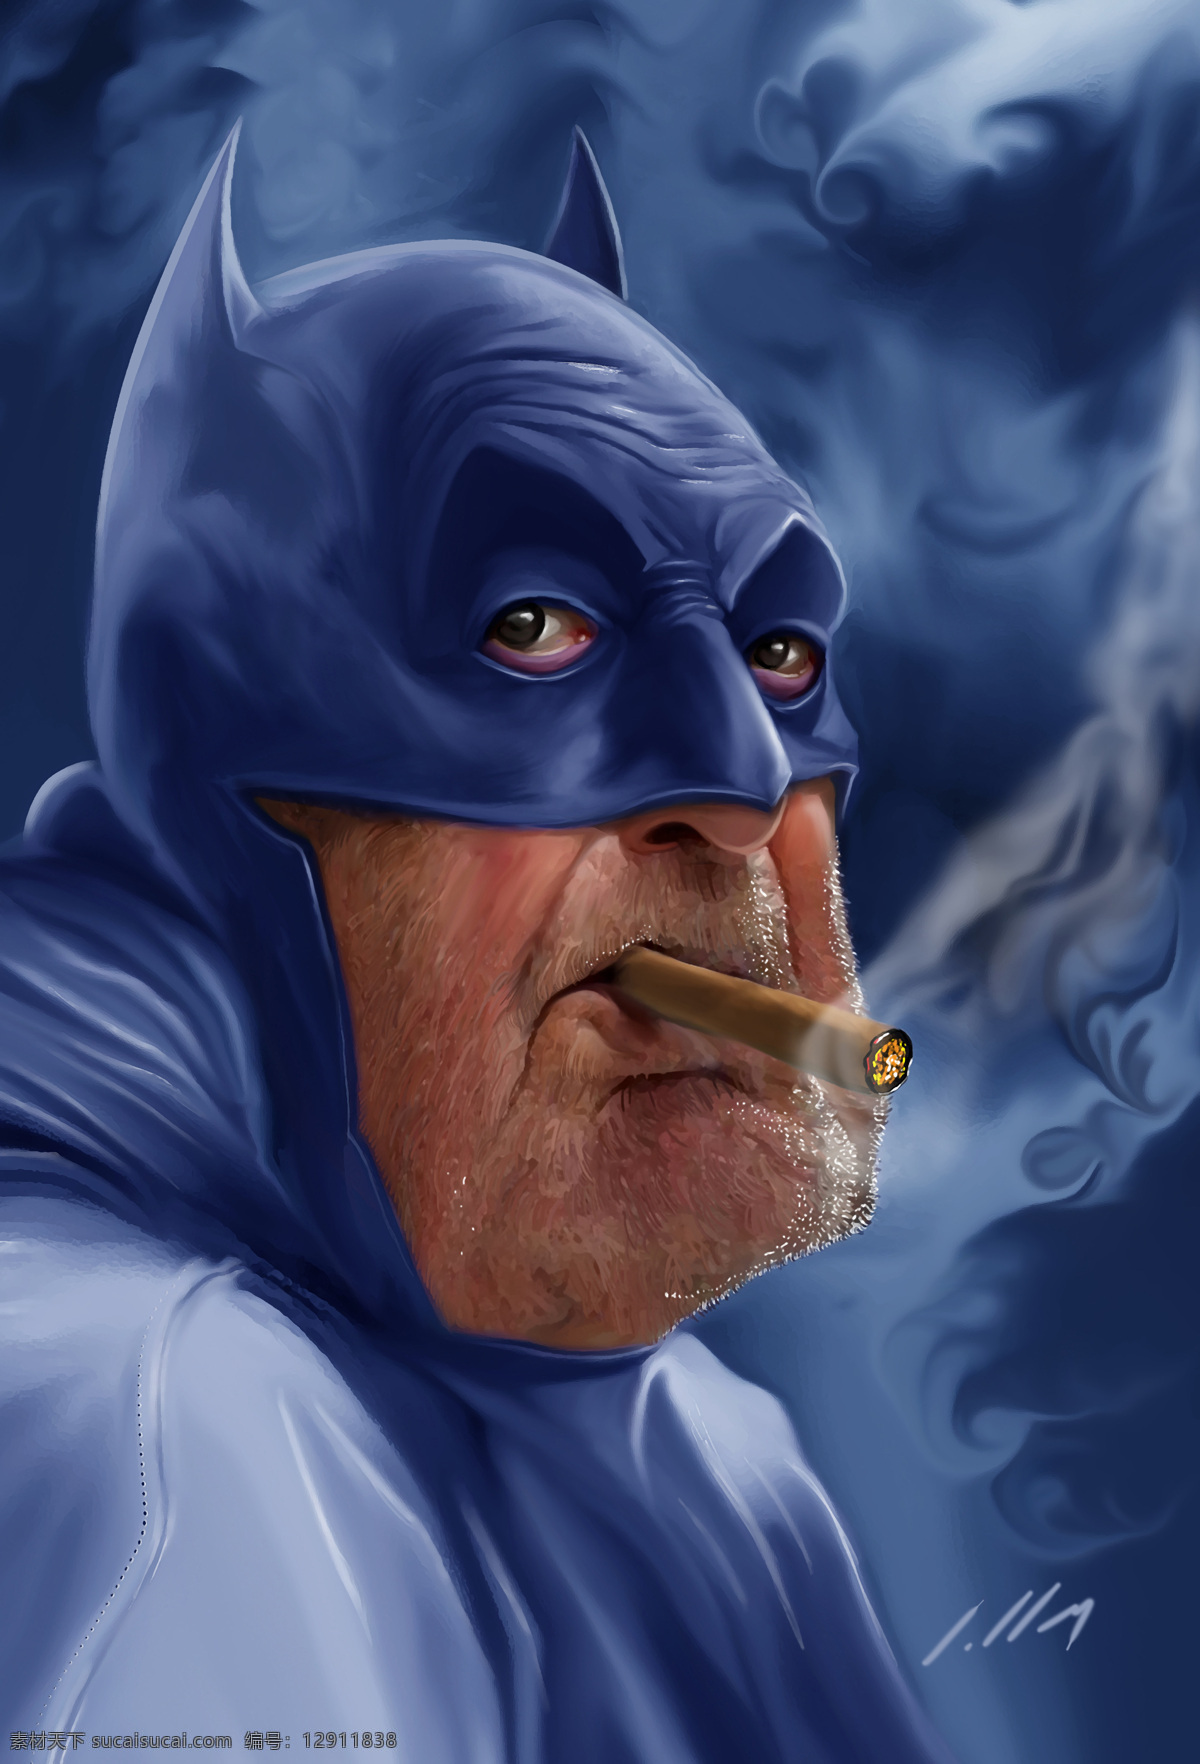 年老的蝙蝠侠 蝙蝠侠 batman 黑暗骑士 华纳 dc漫画 超级英雄 英雄联盟 动漫动画 动漫人物 老年 蓝色 香烟 烟雾